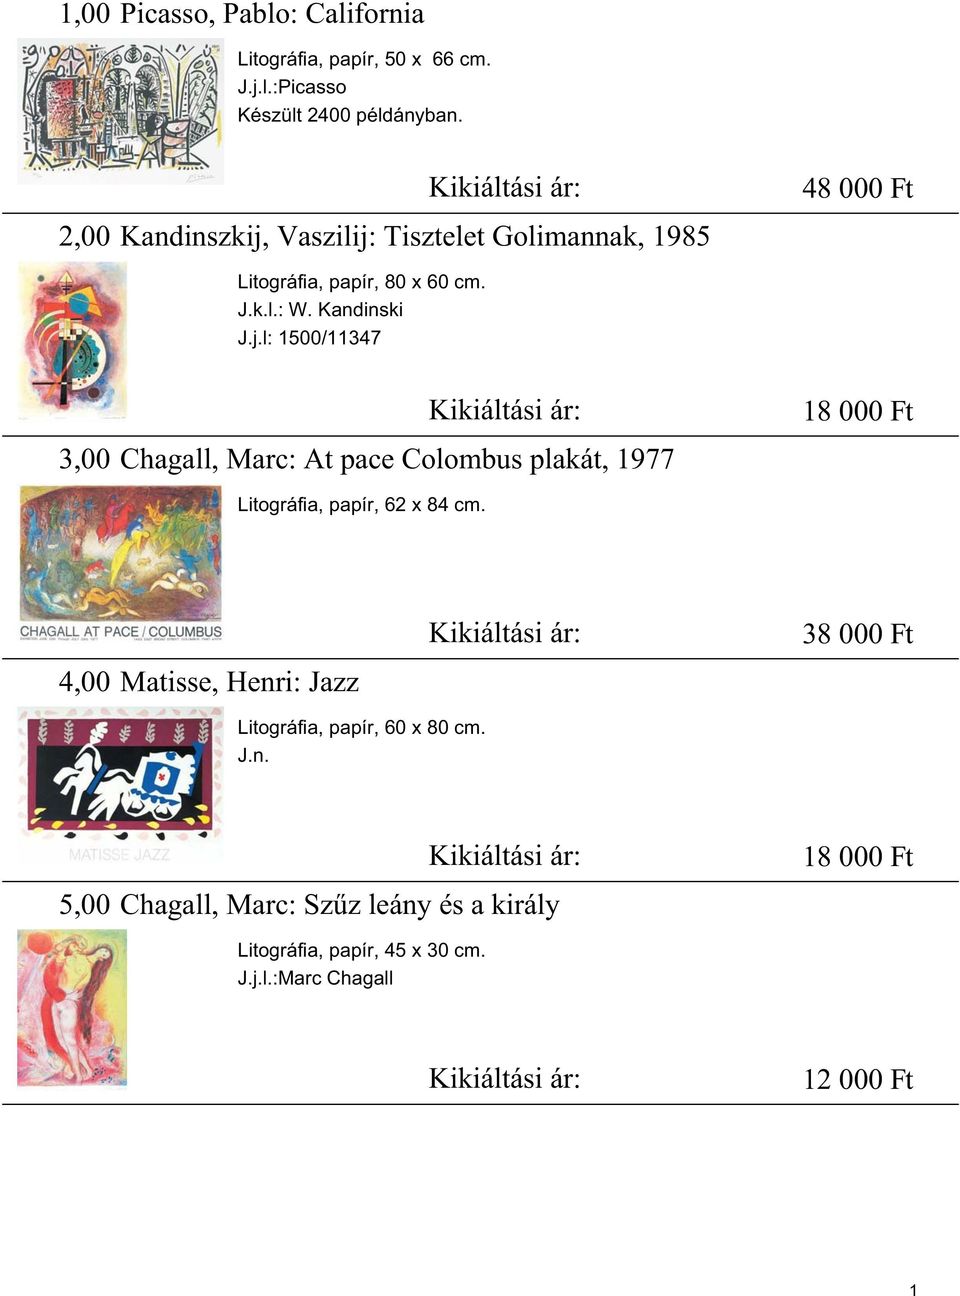 Vaszilij: Tisztelet Golimannak, 1985 Litográfia, papír, 80 x 60 cm. J.k.l.: W. Kandinski J.j.l: 1500/11347 3,00 Kikiáltási ár: 18 000 Ft Chagall, Marc: At pace Colombus plakát, 1977 Litográfia, papír, 62 x 84 cm.